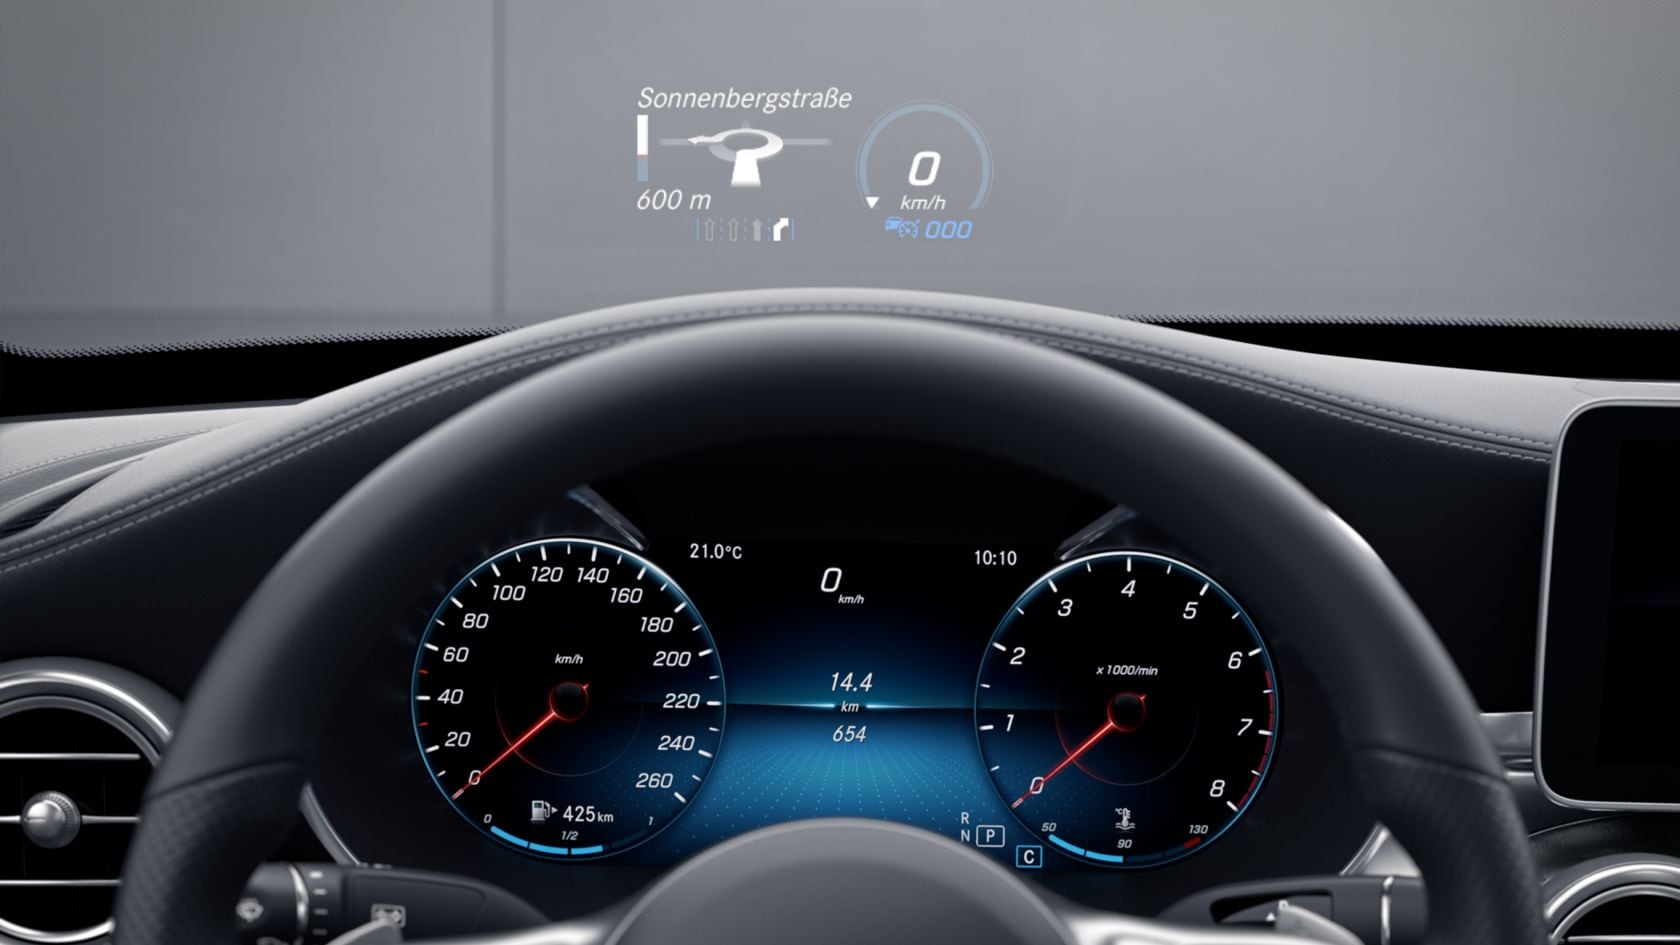 Nâng cấp hệ thống hiển thị kính lái HUD cho Mercedes